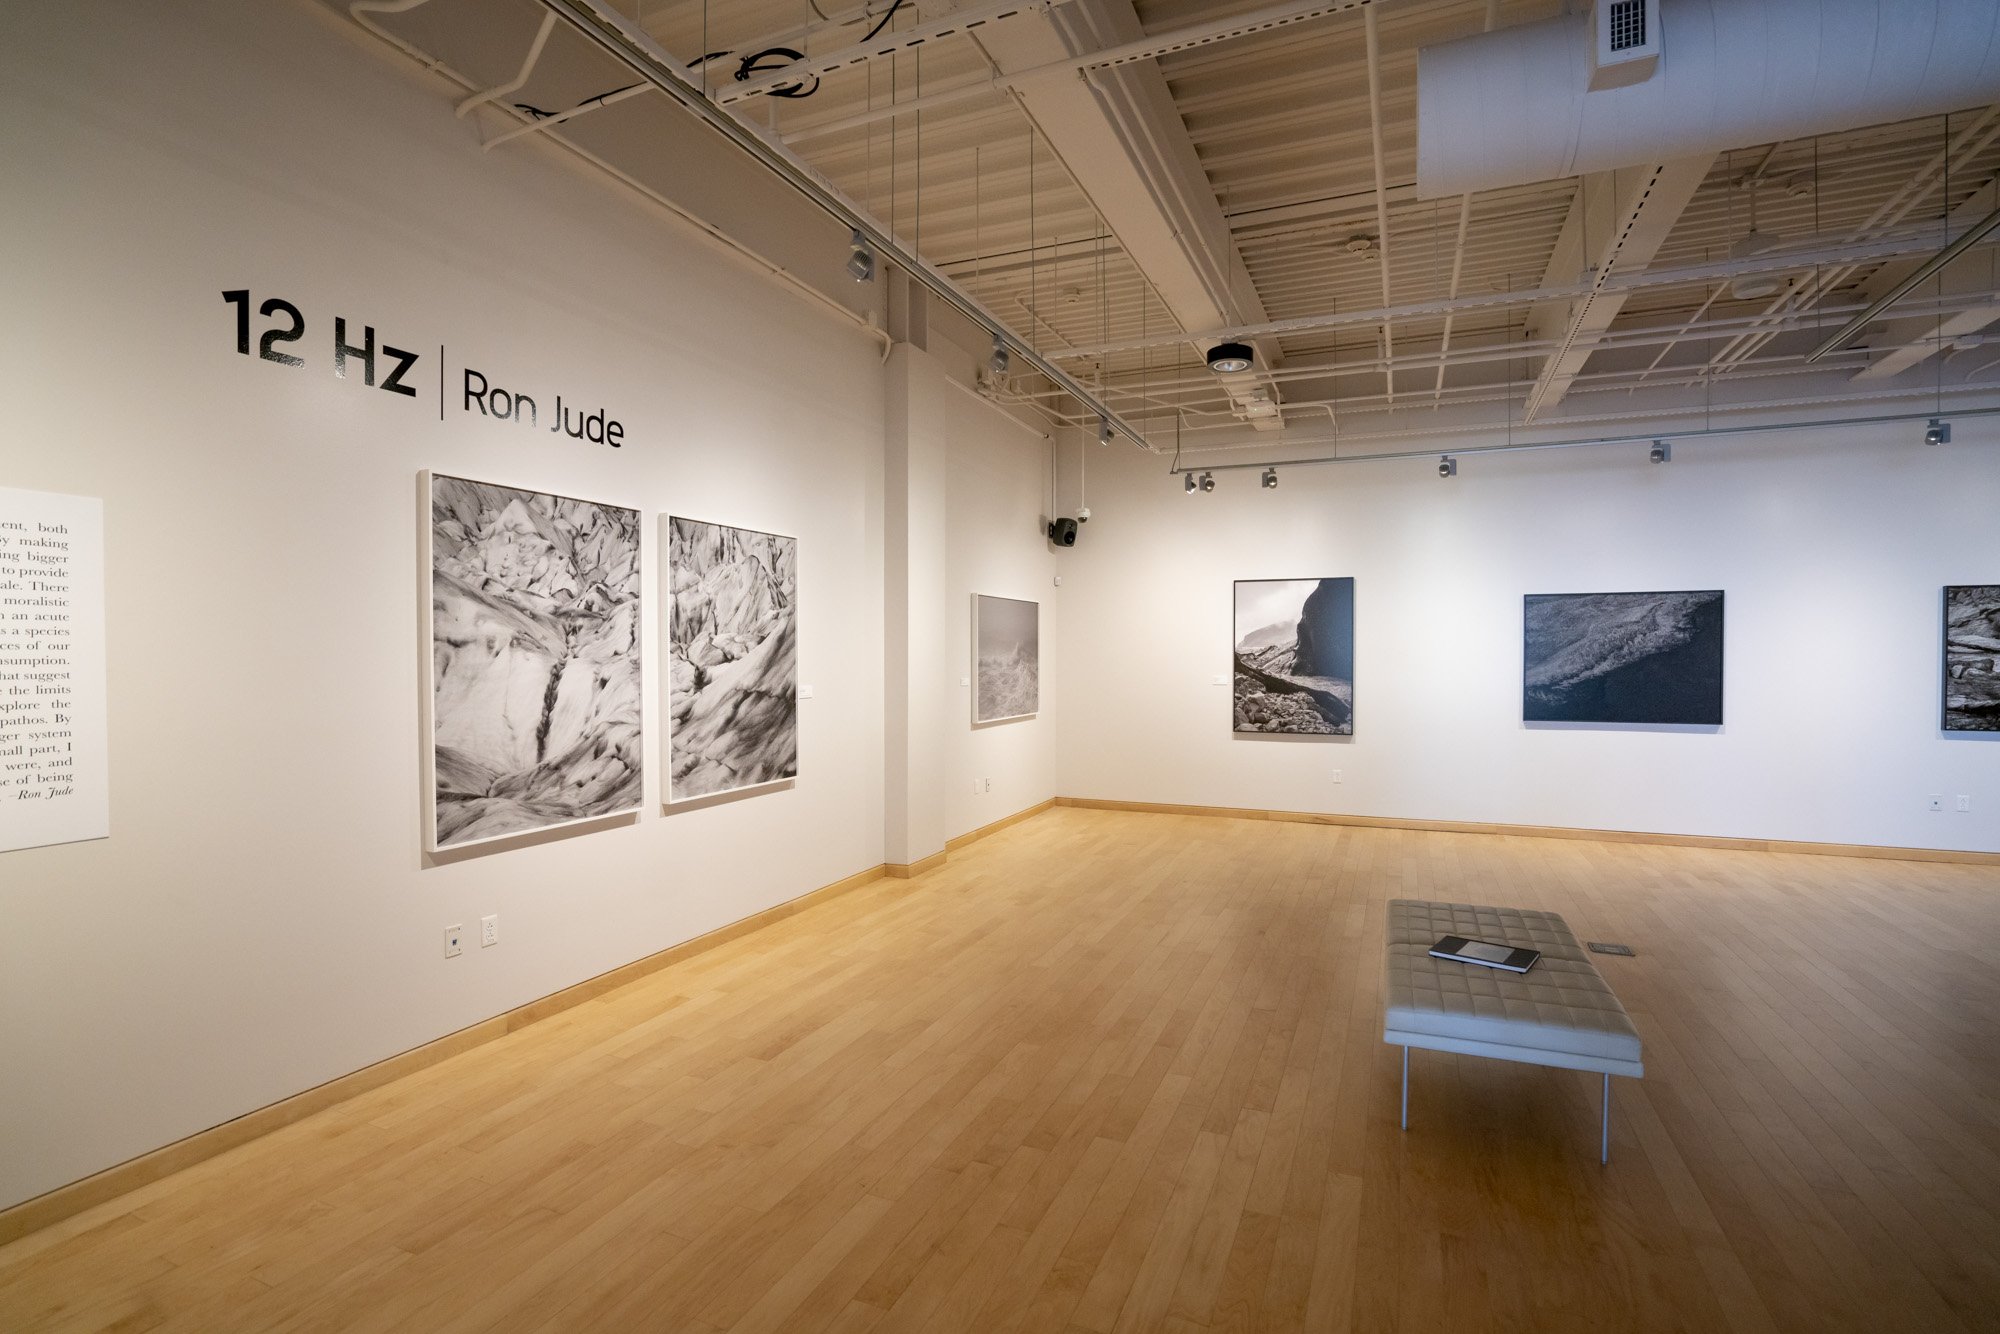    Ron Jude: 12 Hz   exhibition. 